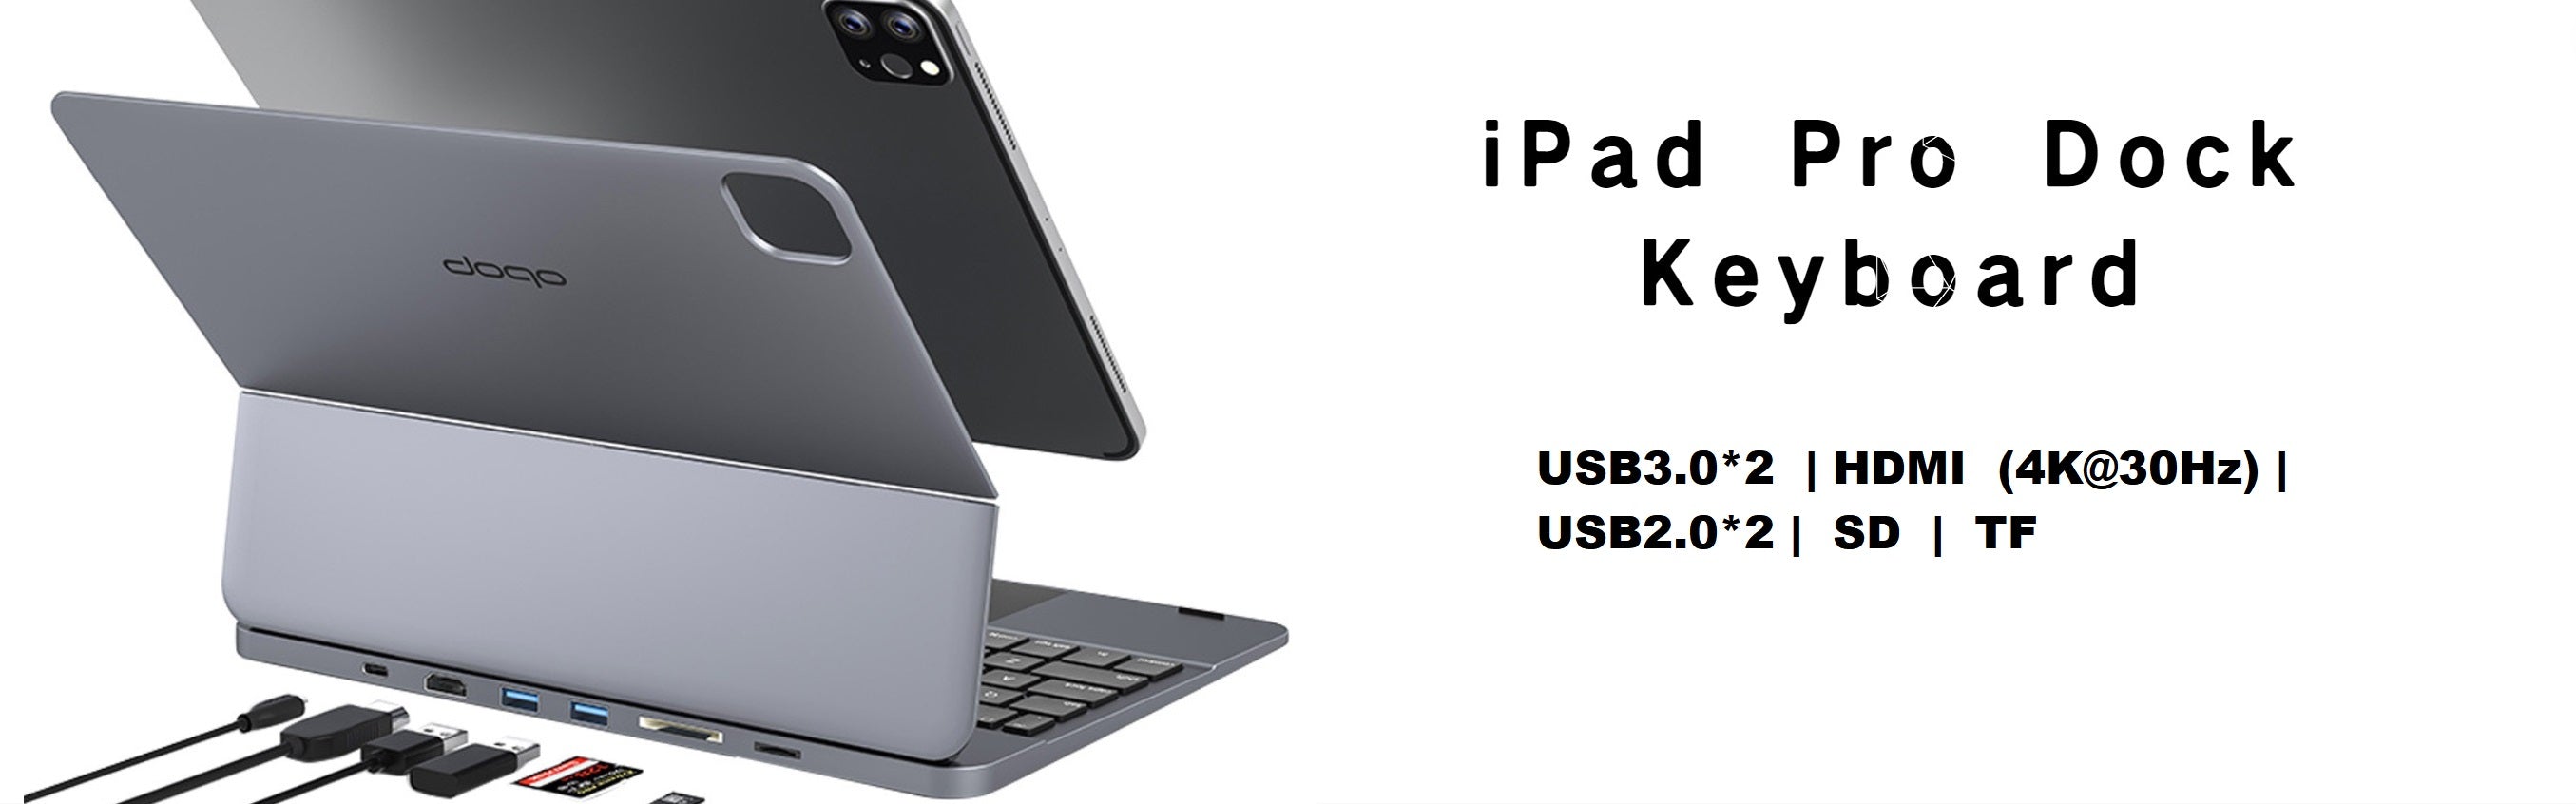 magfit-7in1-iPad-keyboard-Dock